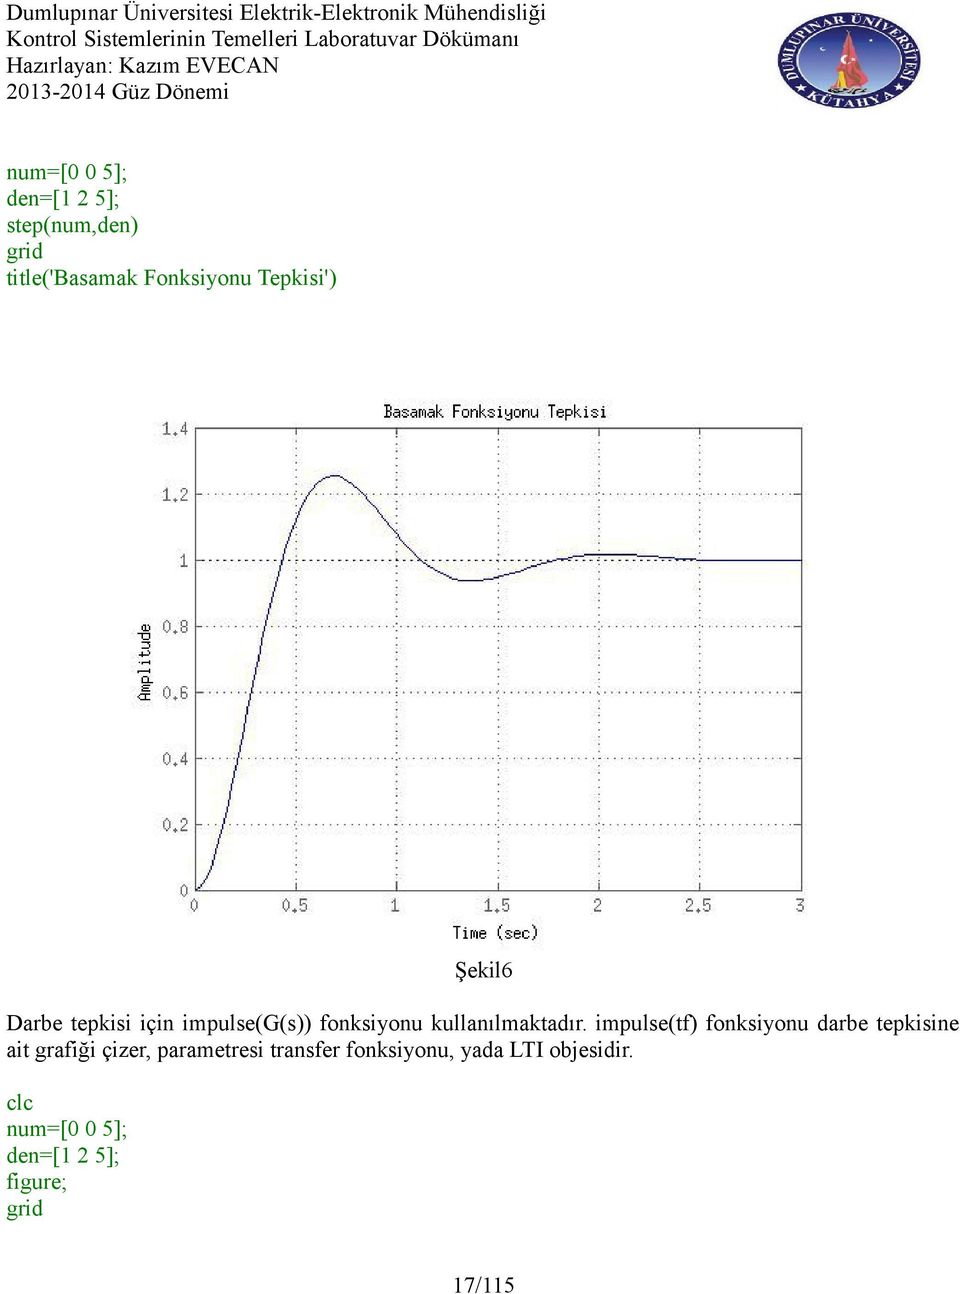 impulse(tf) fonksiyonu darbe tepkisine ait grafiği çizer, parametresi